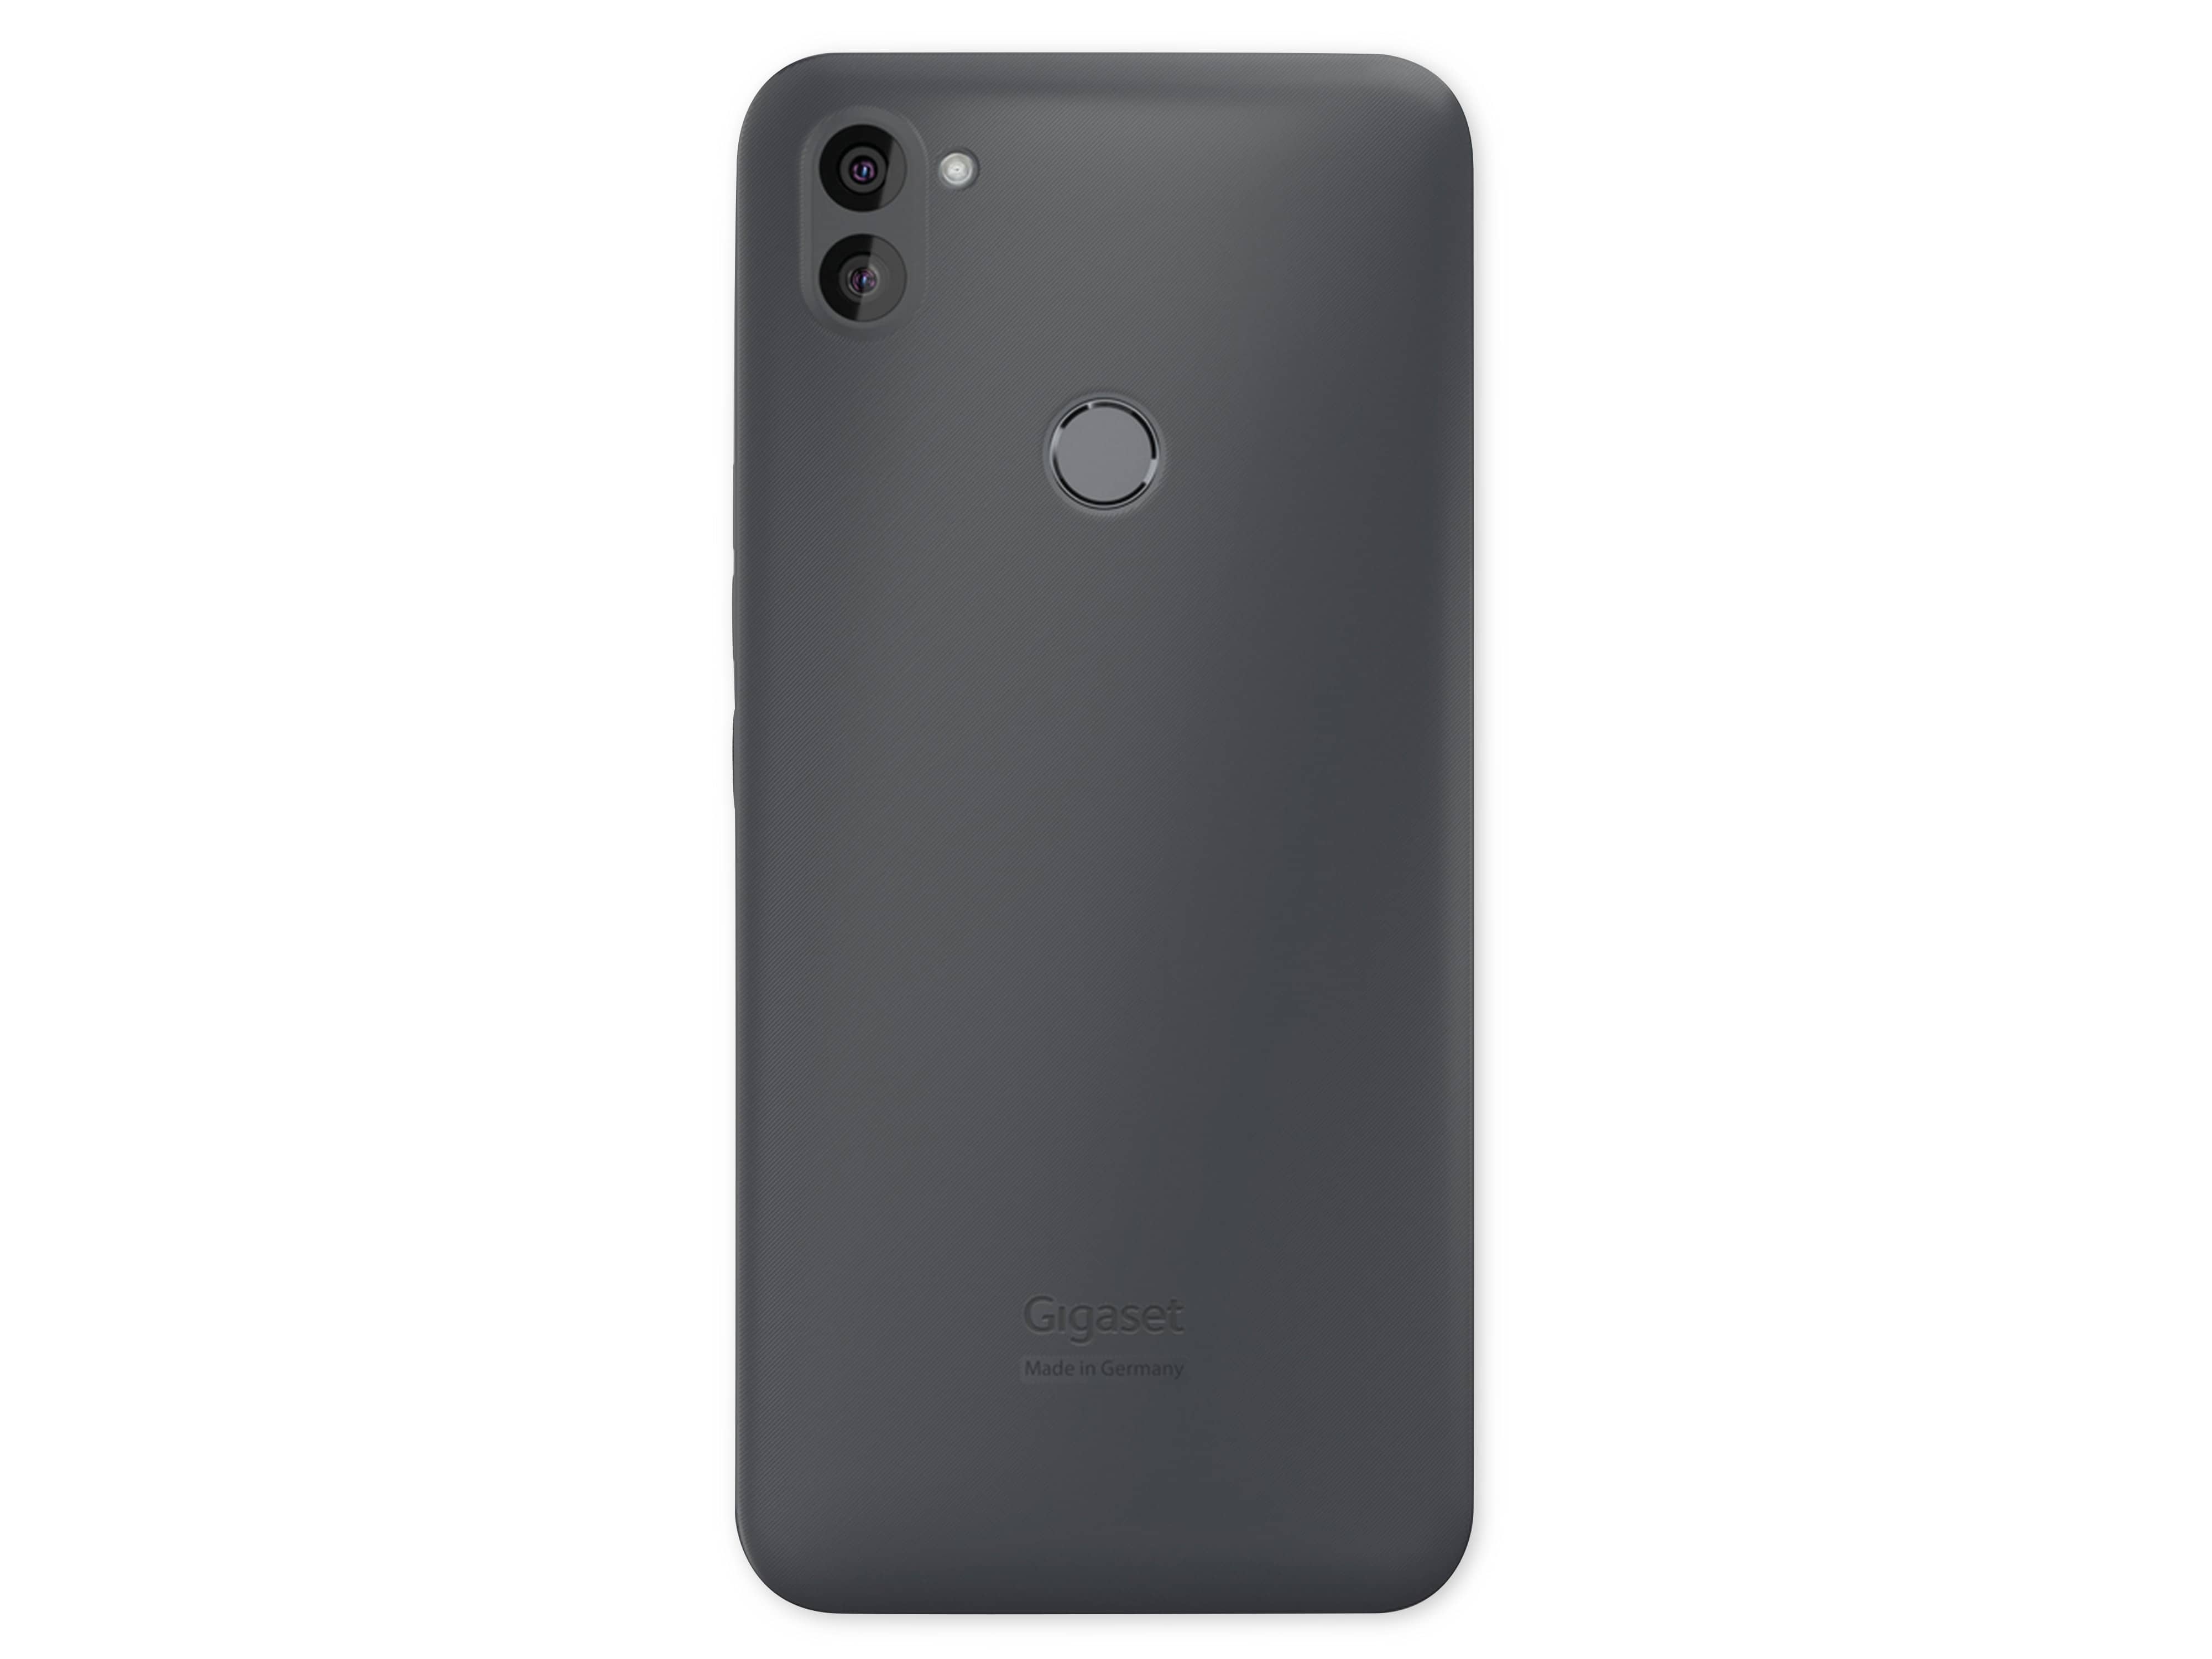 GIGASET Smartphone GS5 LITE, dark titanium grey